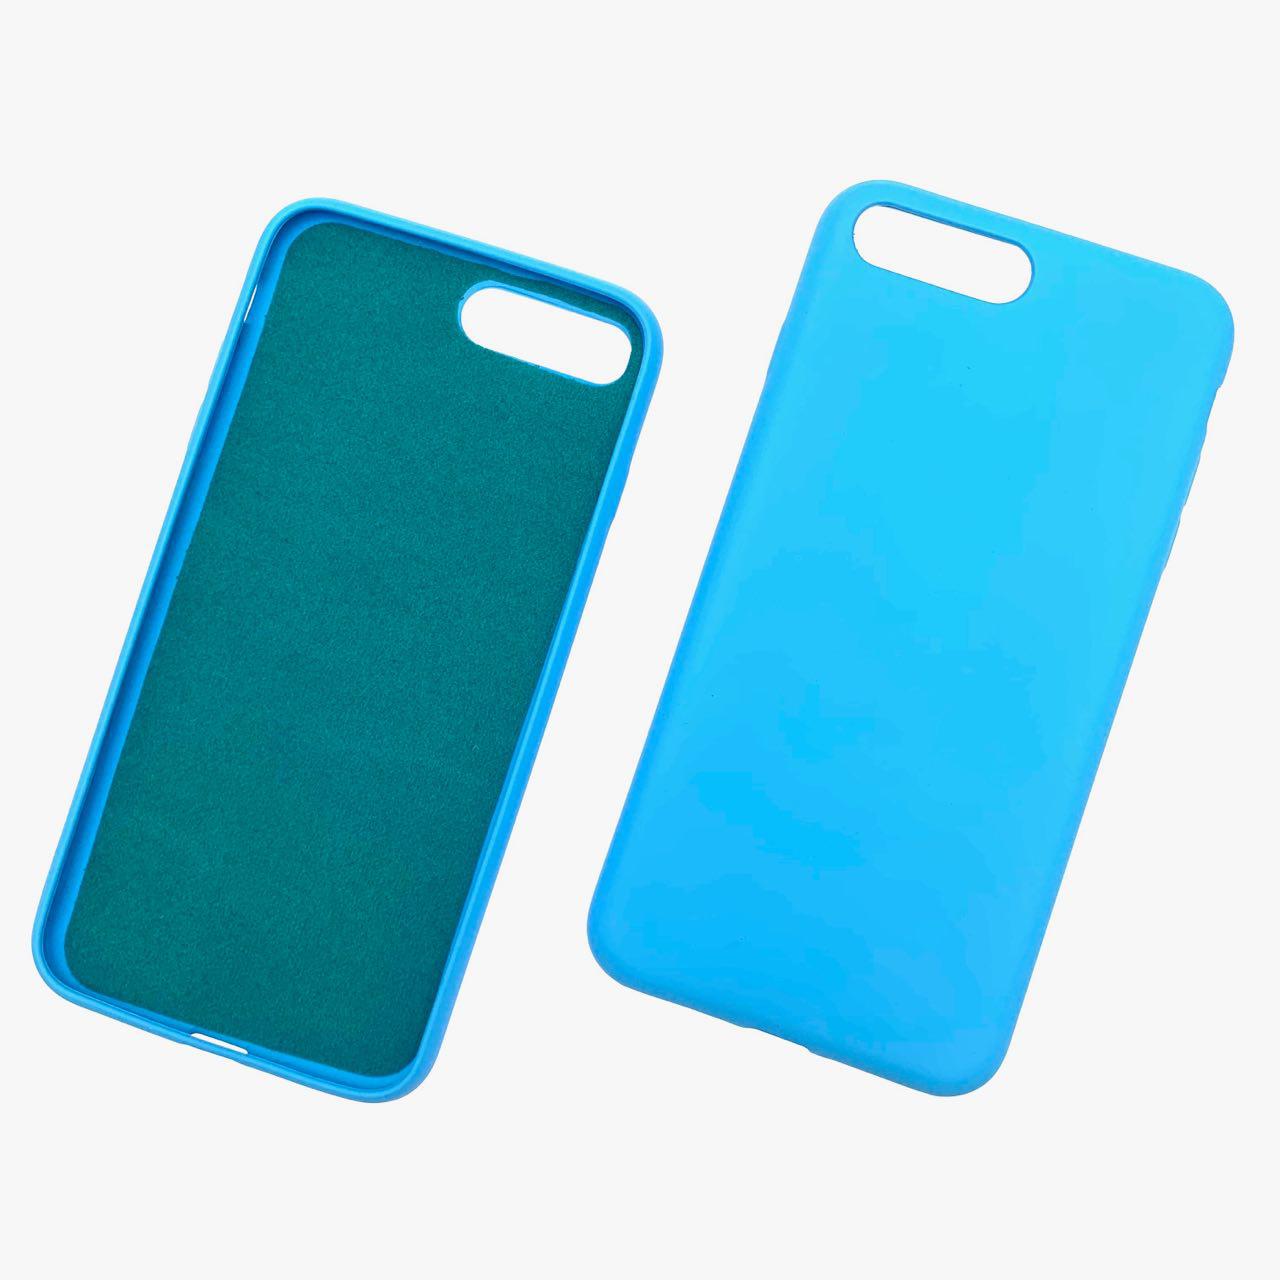 Чехол накладка для APPLE iPhone 7, 8 Plus, силикон, цвет синий.